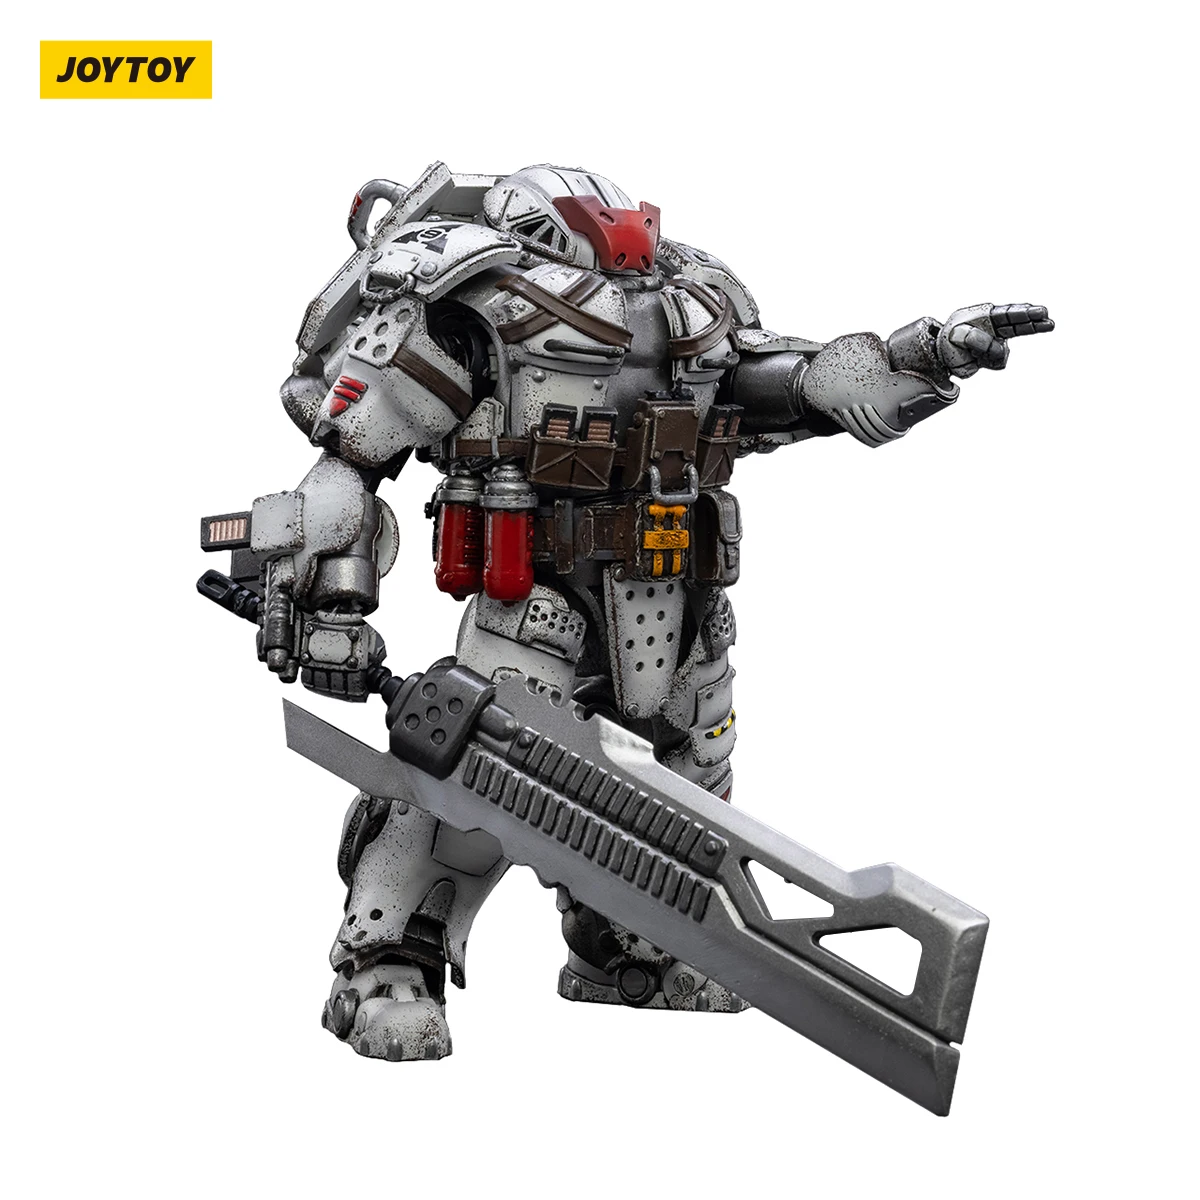 [Preventa] figuras de acción de JOYTOY 1/18 Warhammer 40k, modelo de juguetes Mecha Sorrow Expeditionary Forces 4